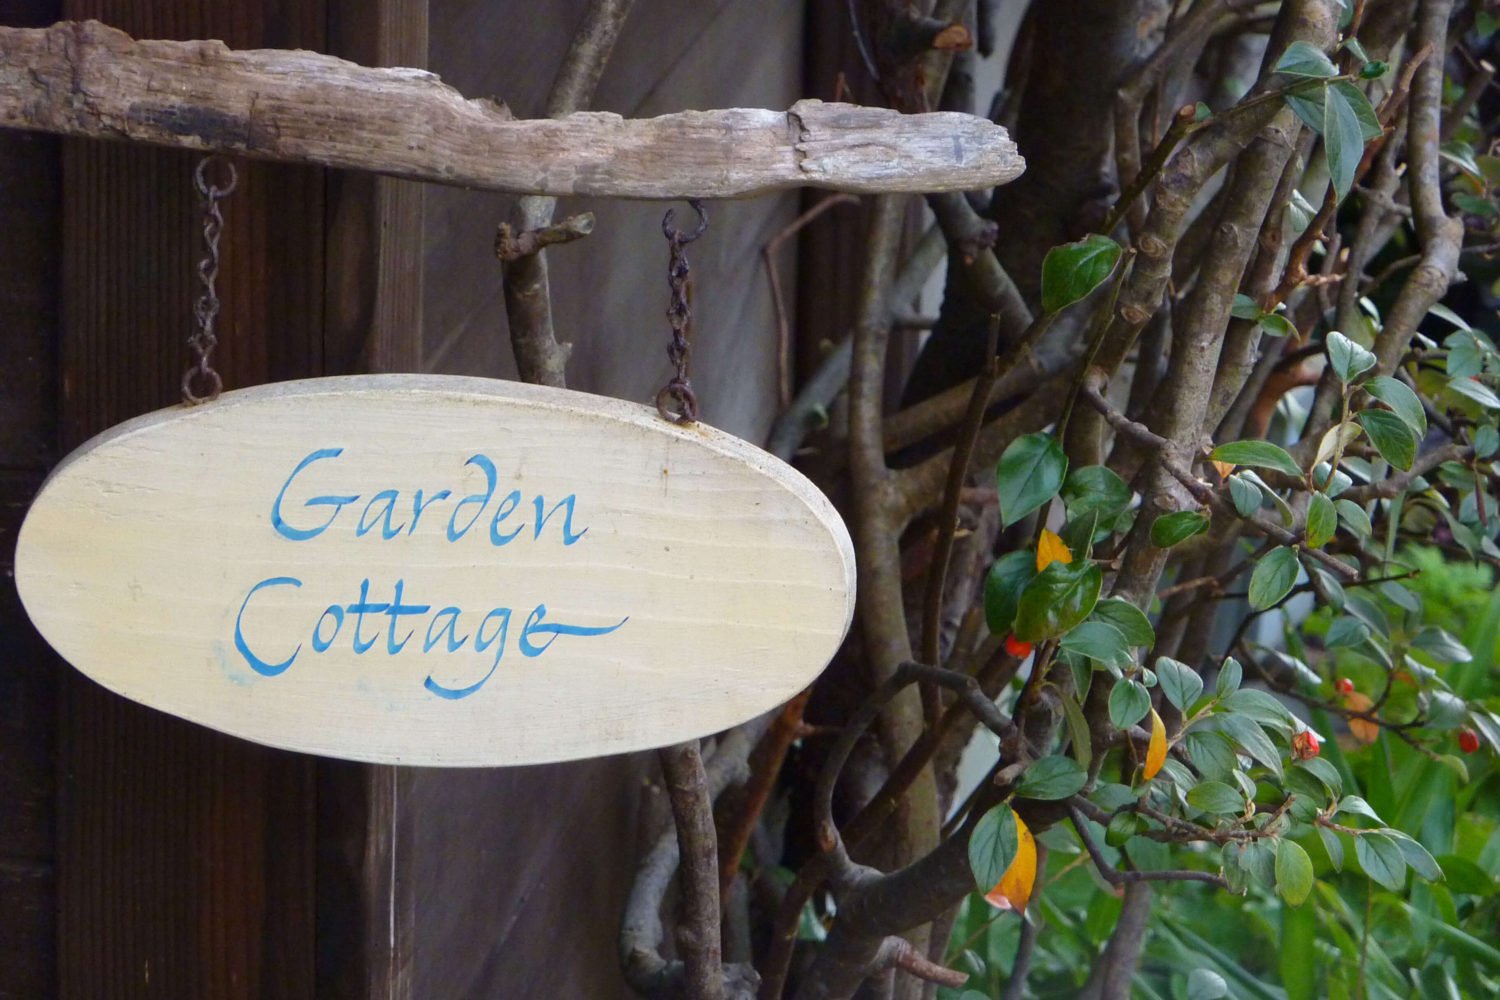 Garden Cottage room sign